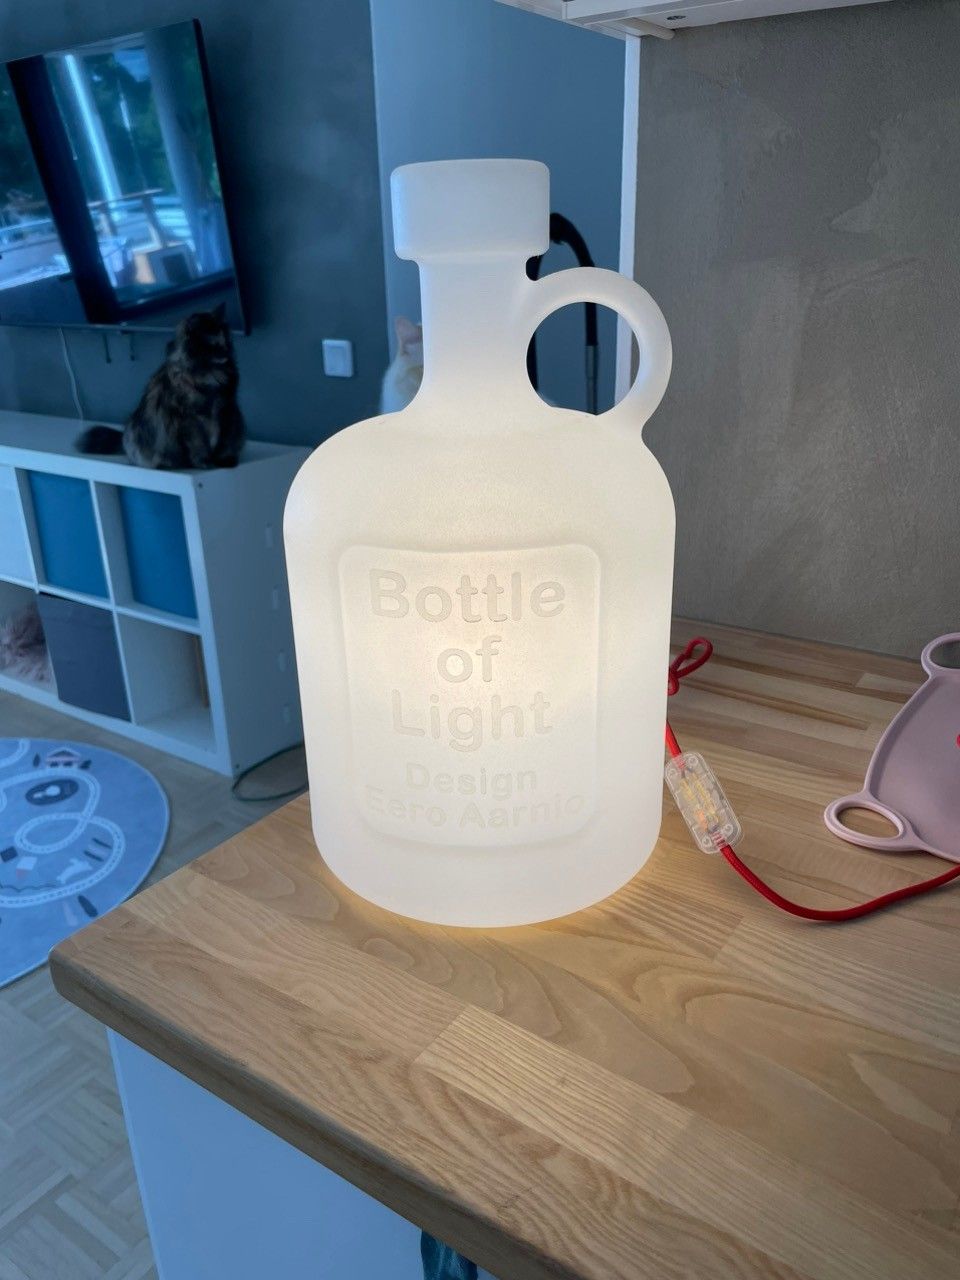 Bottle of light-valaisin